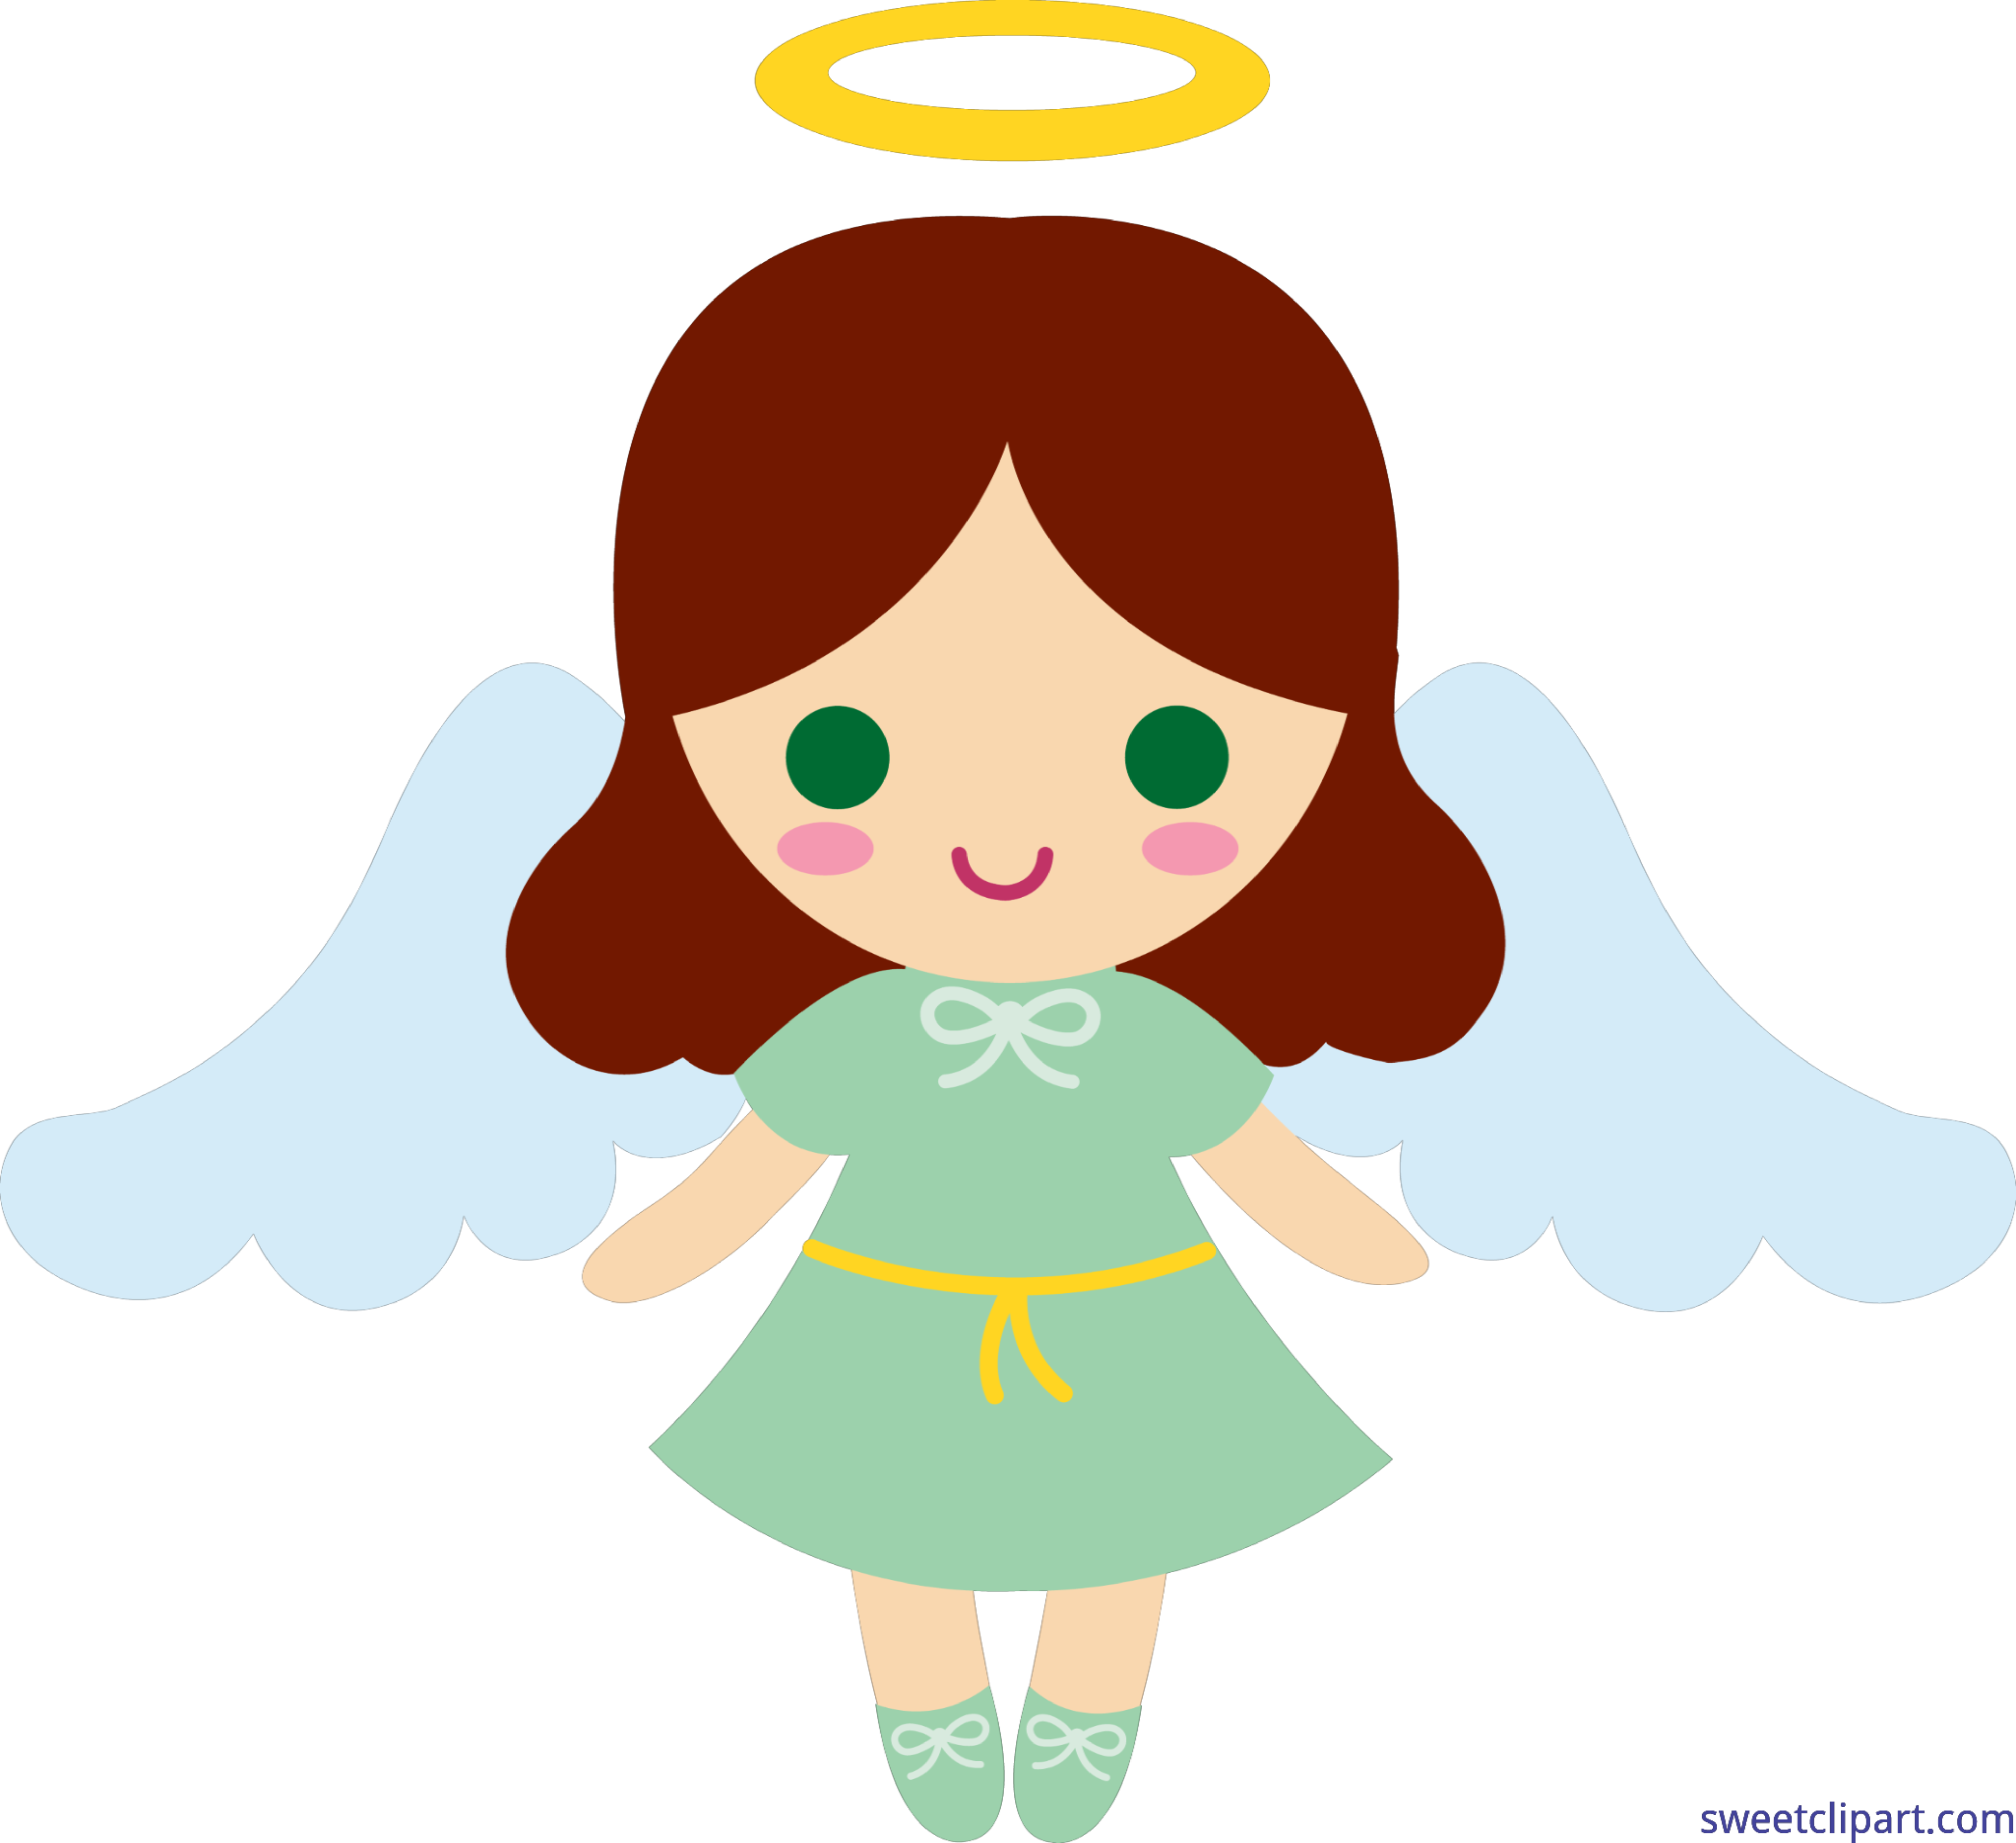 clipart angel little girl